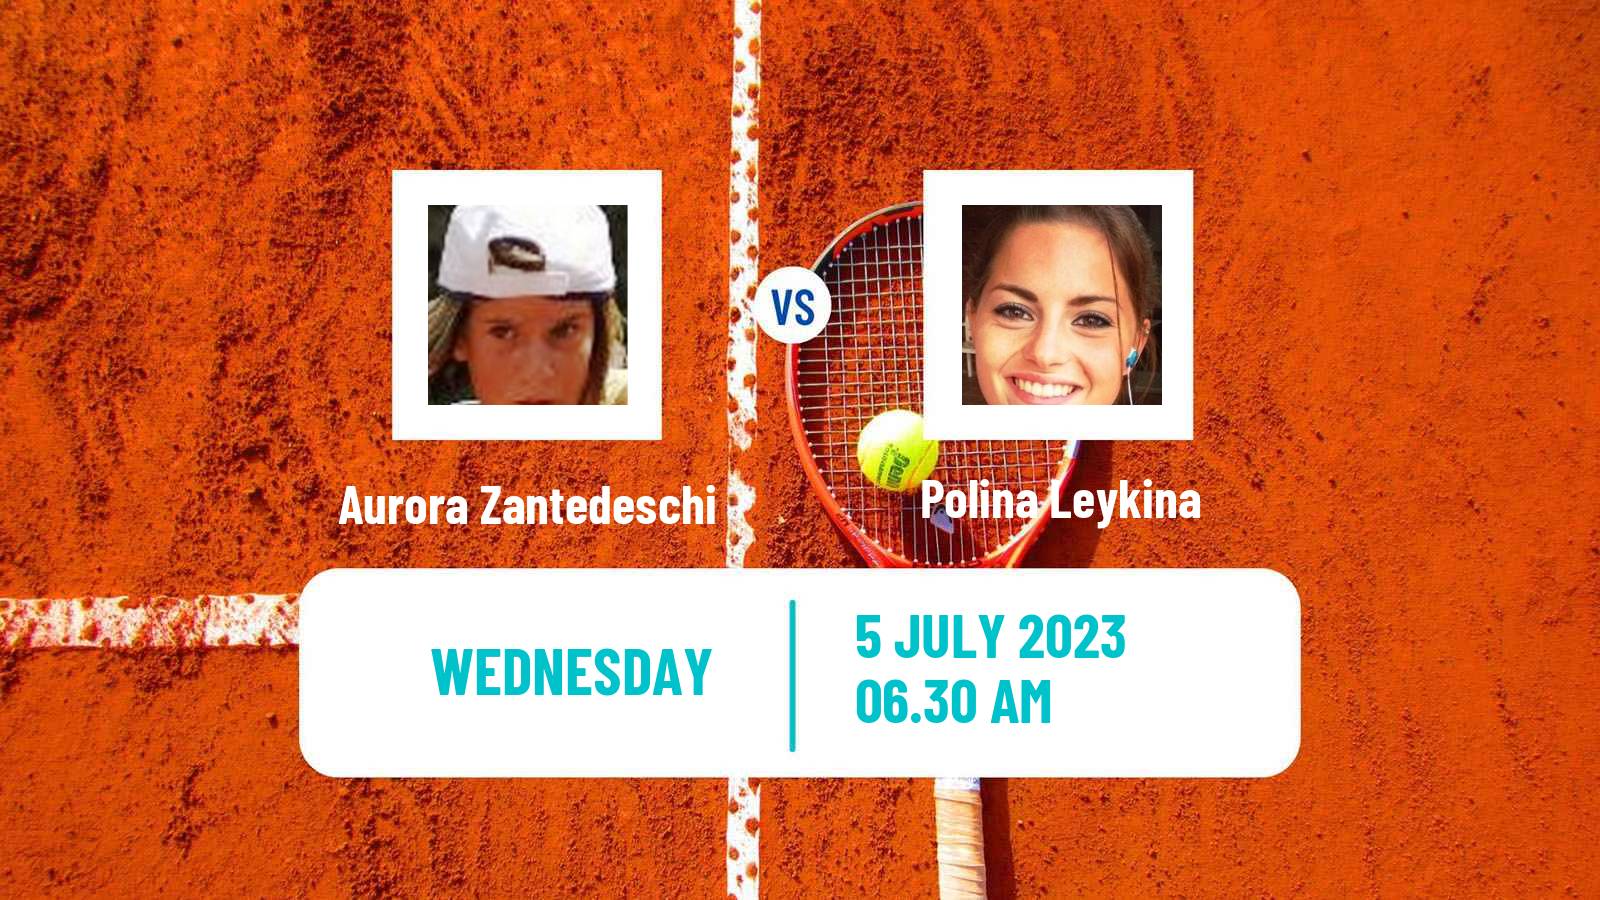 Tennis ITF W25 Stuttgart Vaihingen Women Aurora Zantedeschi - Polina Leykina